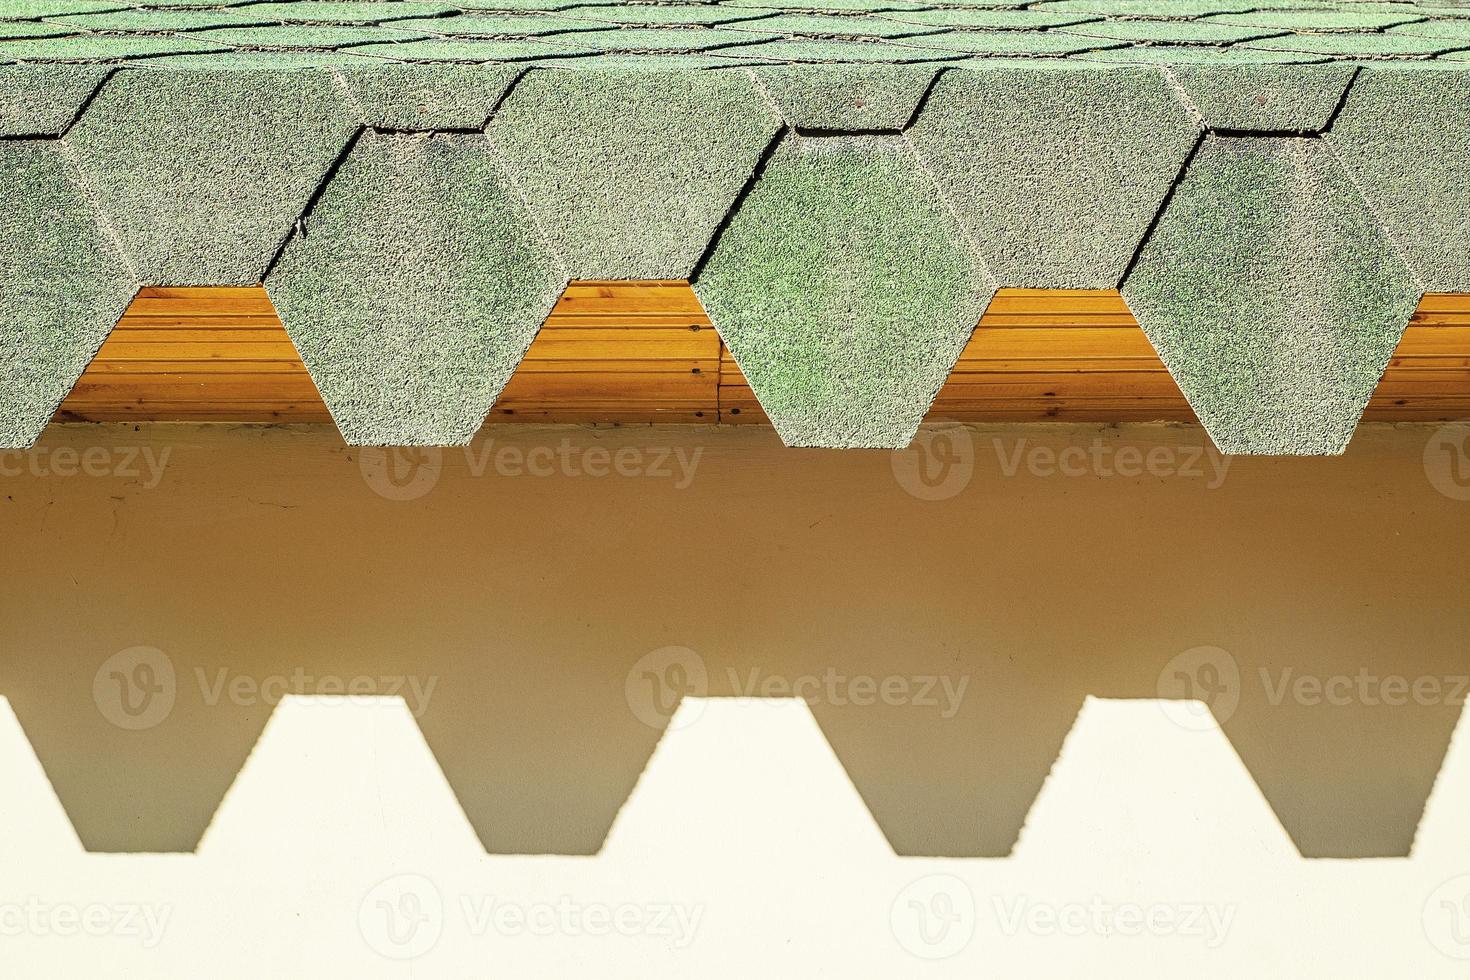 tetto verde con tegole esagonali. tetto con bordi frastagliati che proiettano ombre dure sul muro. foto